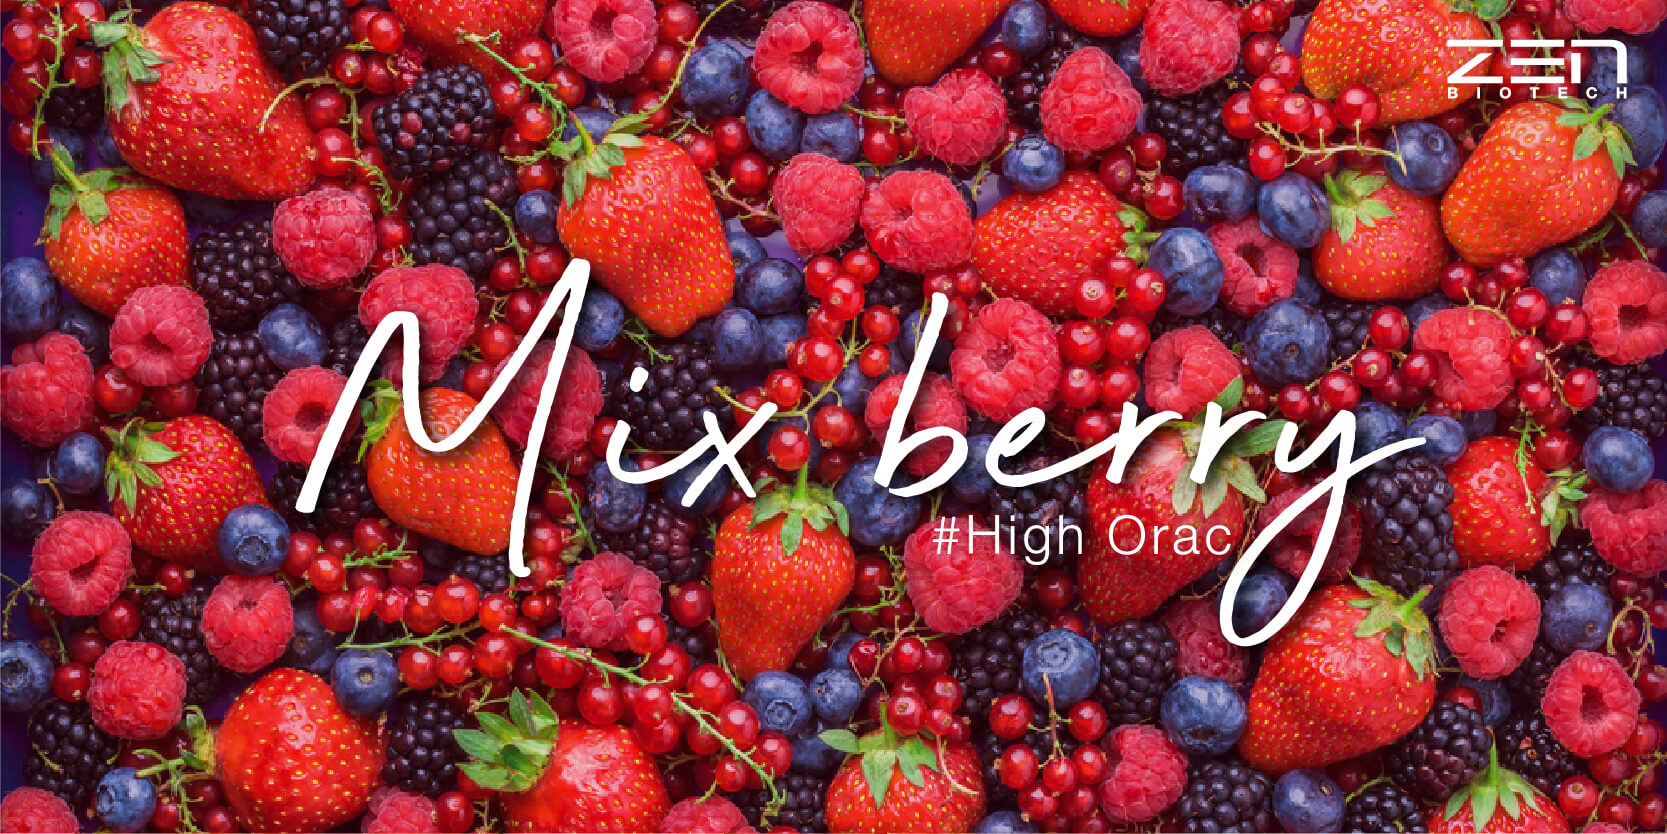 สารสกัดจากเบอร์รี่เข้มข้นสำกัด Mix Berry